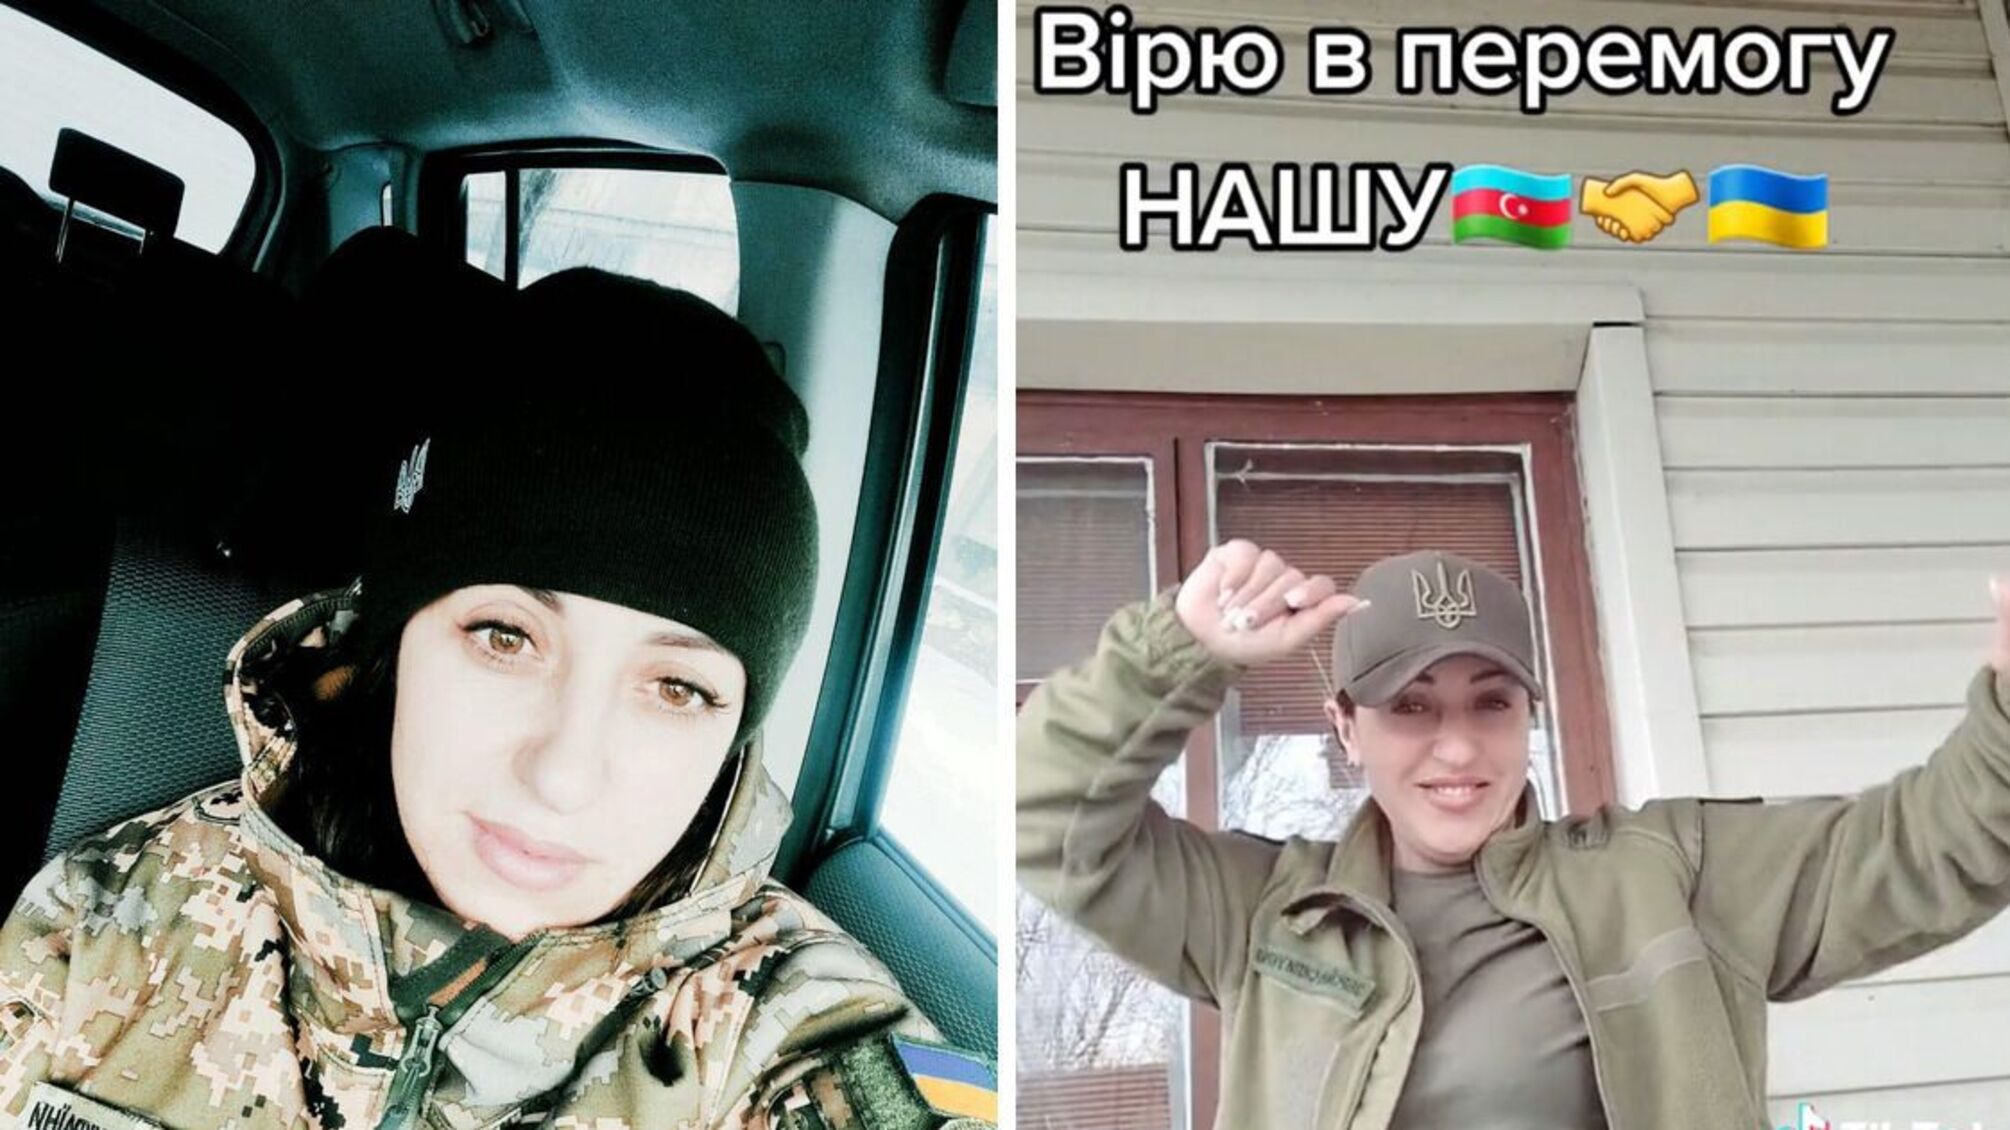 Танці у військовій формі і мрії про перемогу: азербайджанка з ЗСУ розповіла свою історію